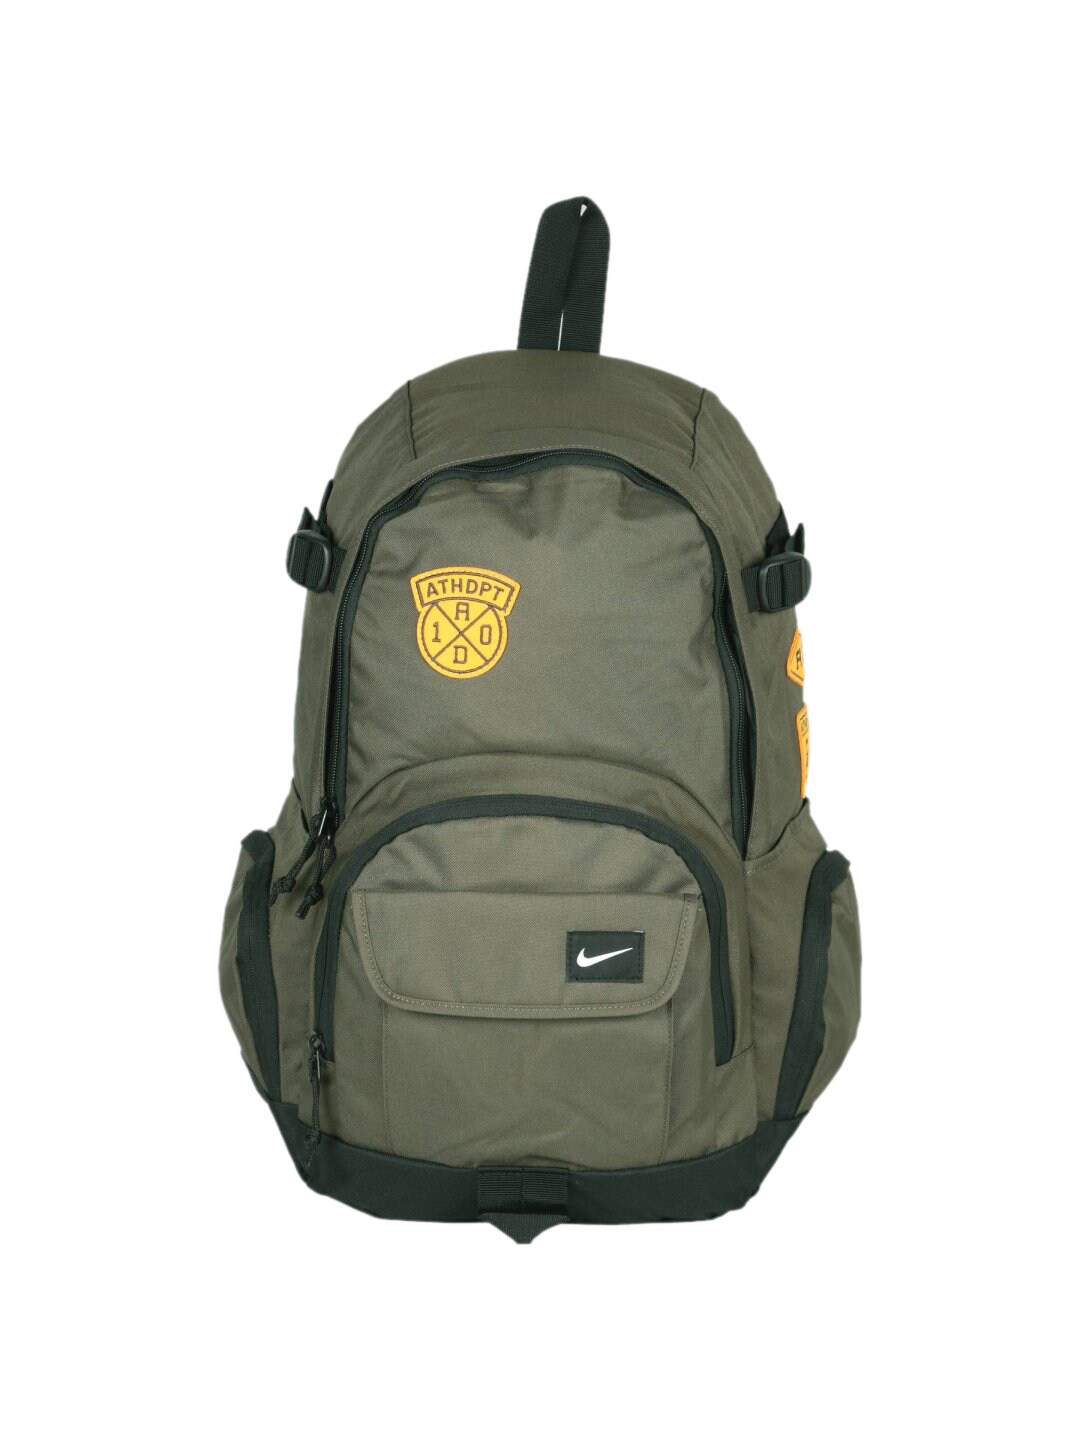 Nike Unisex All Access FU Green Backpack